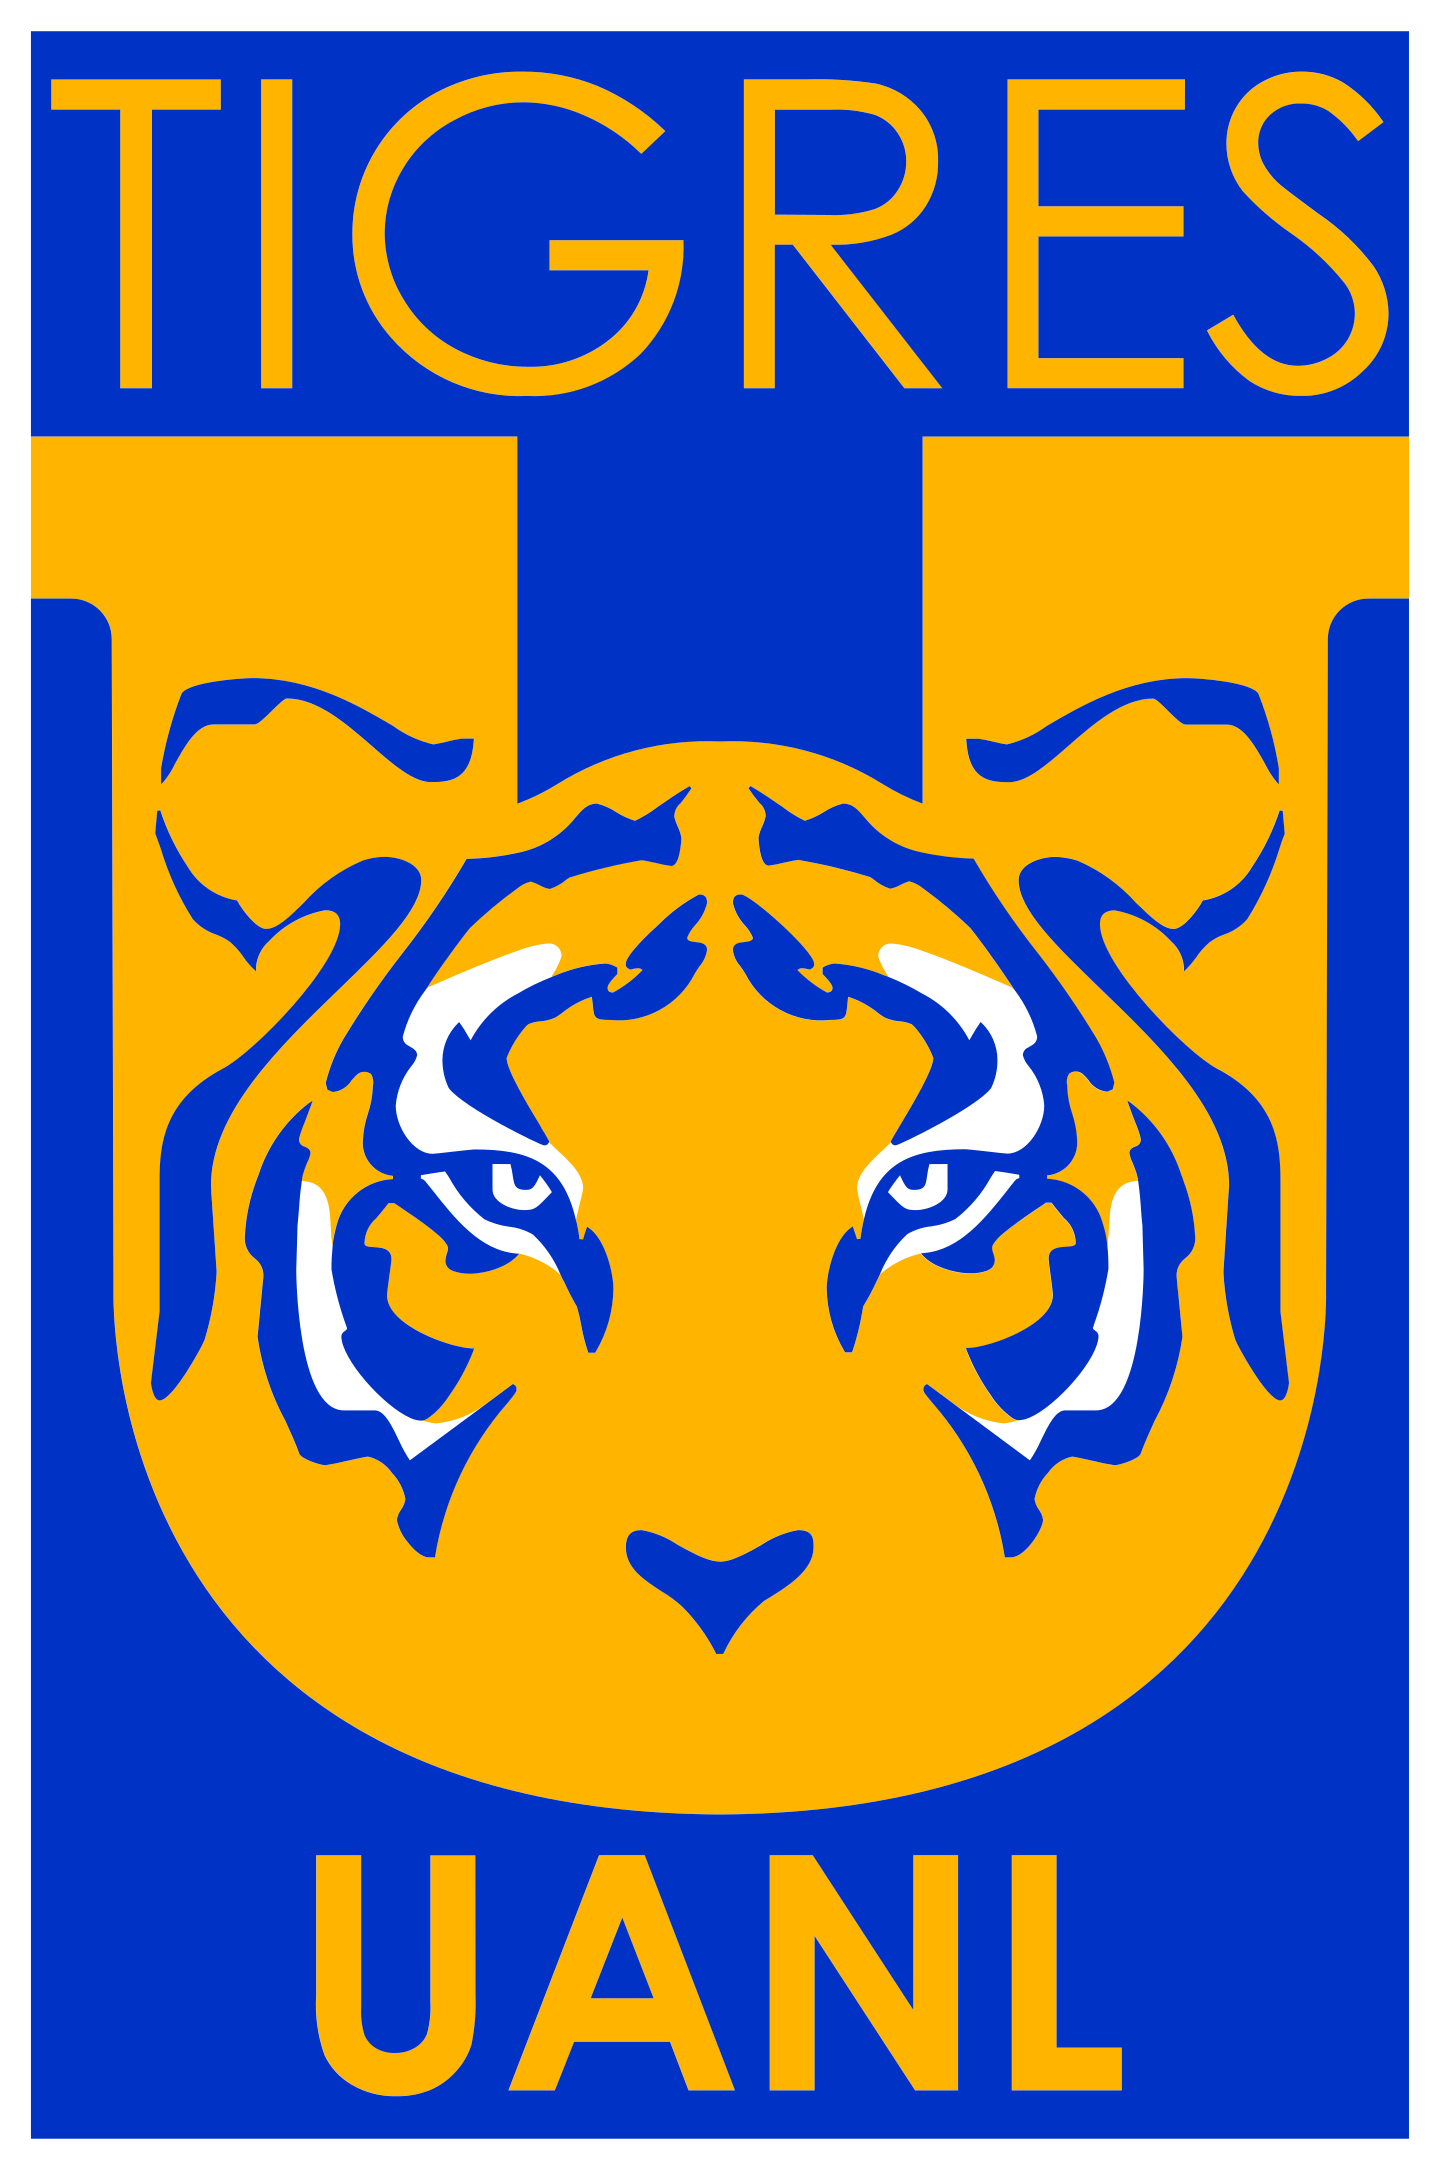 club tigres uanl logo 2 - Club Tigres UANL Logo